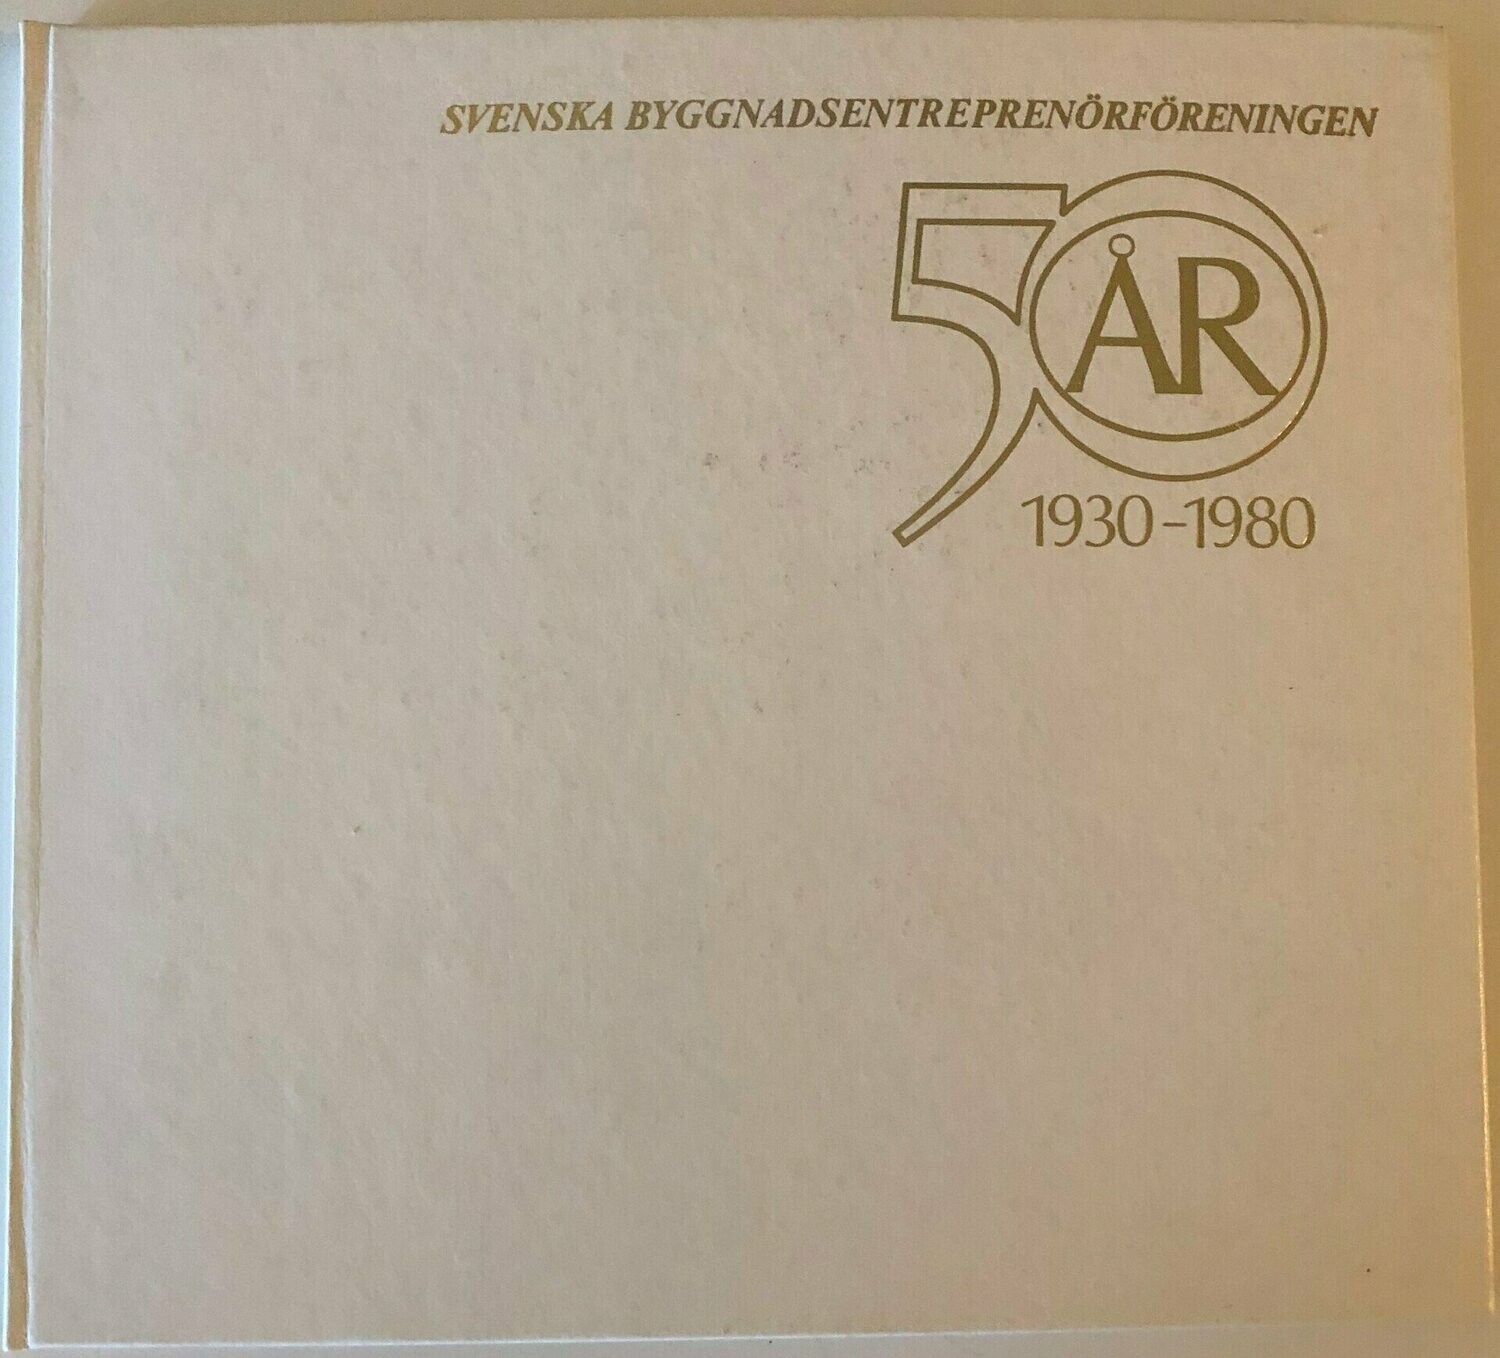 Svenska byggnadsentreprenörföreningen 50 år 1930-1980